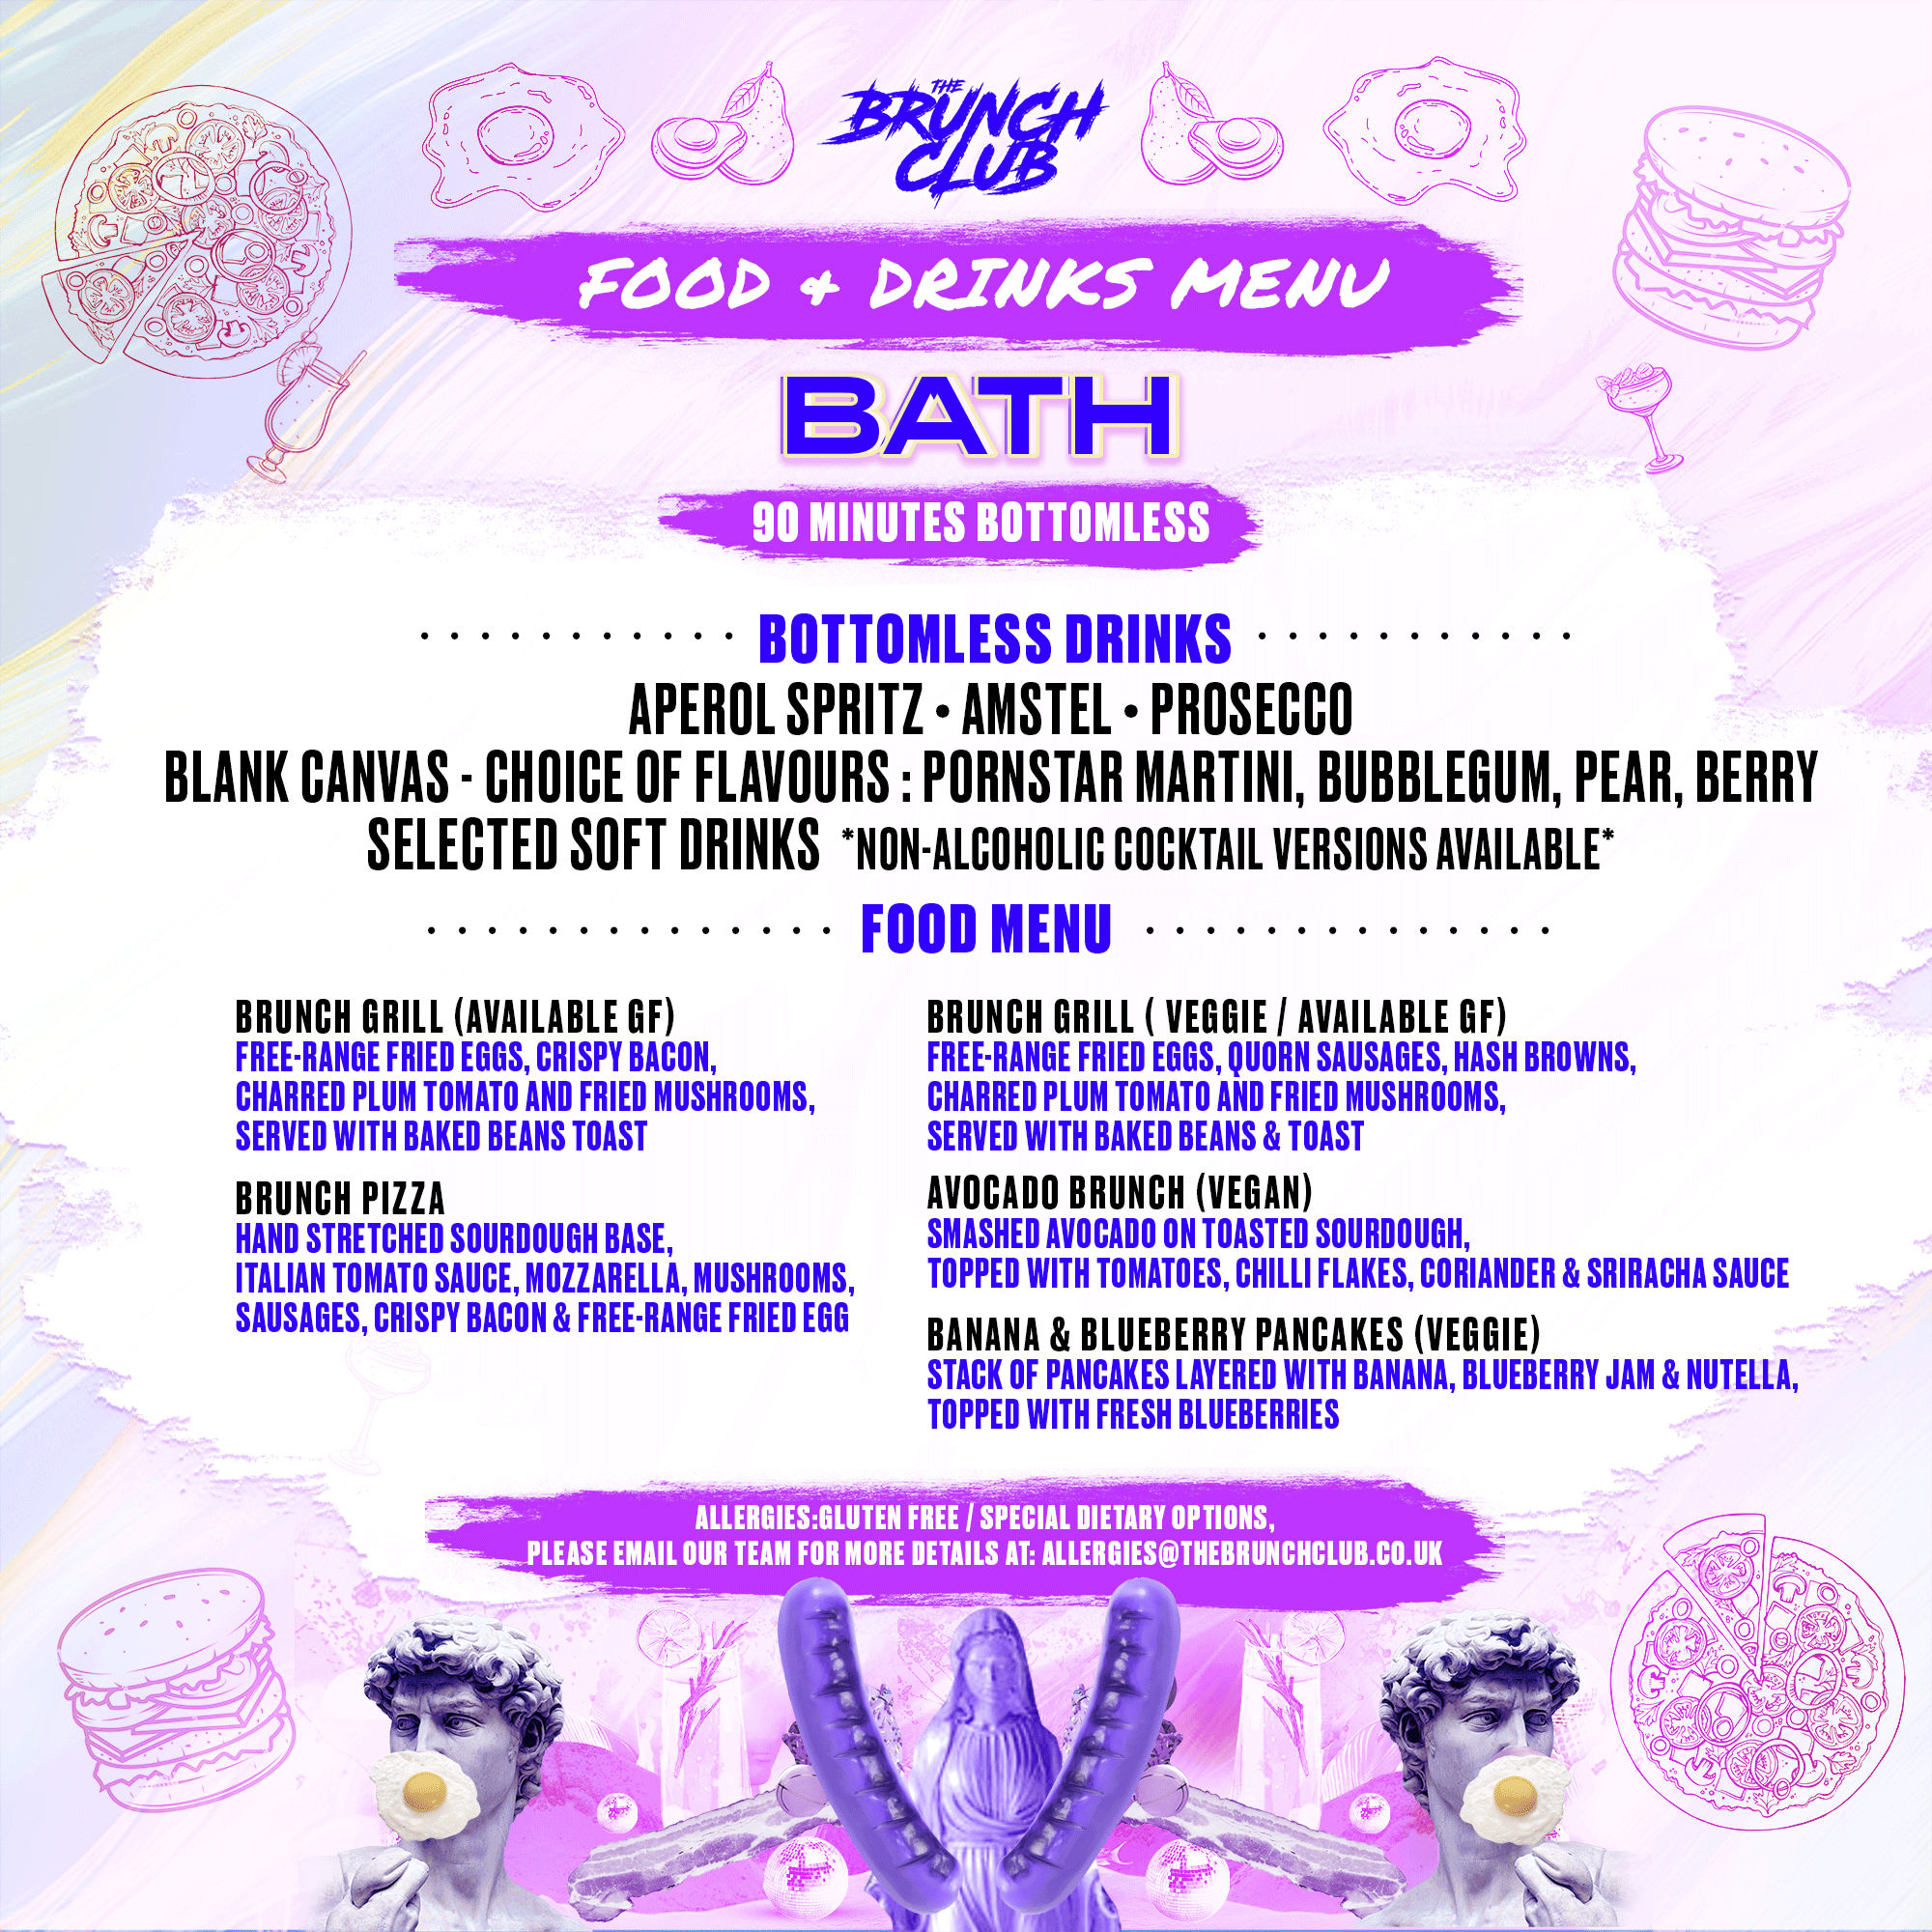 ABBA Bottomless Brunch - Bath